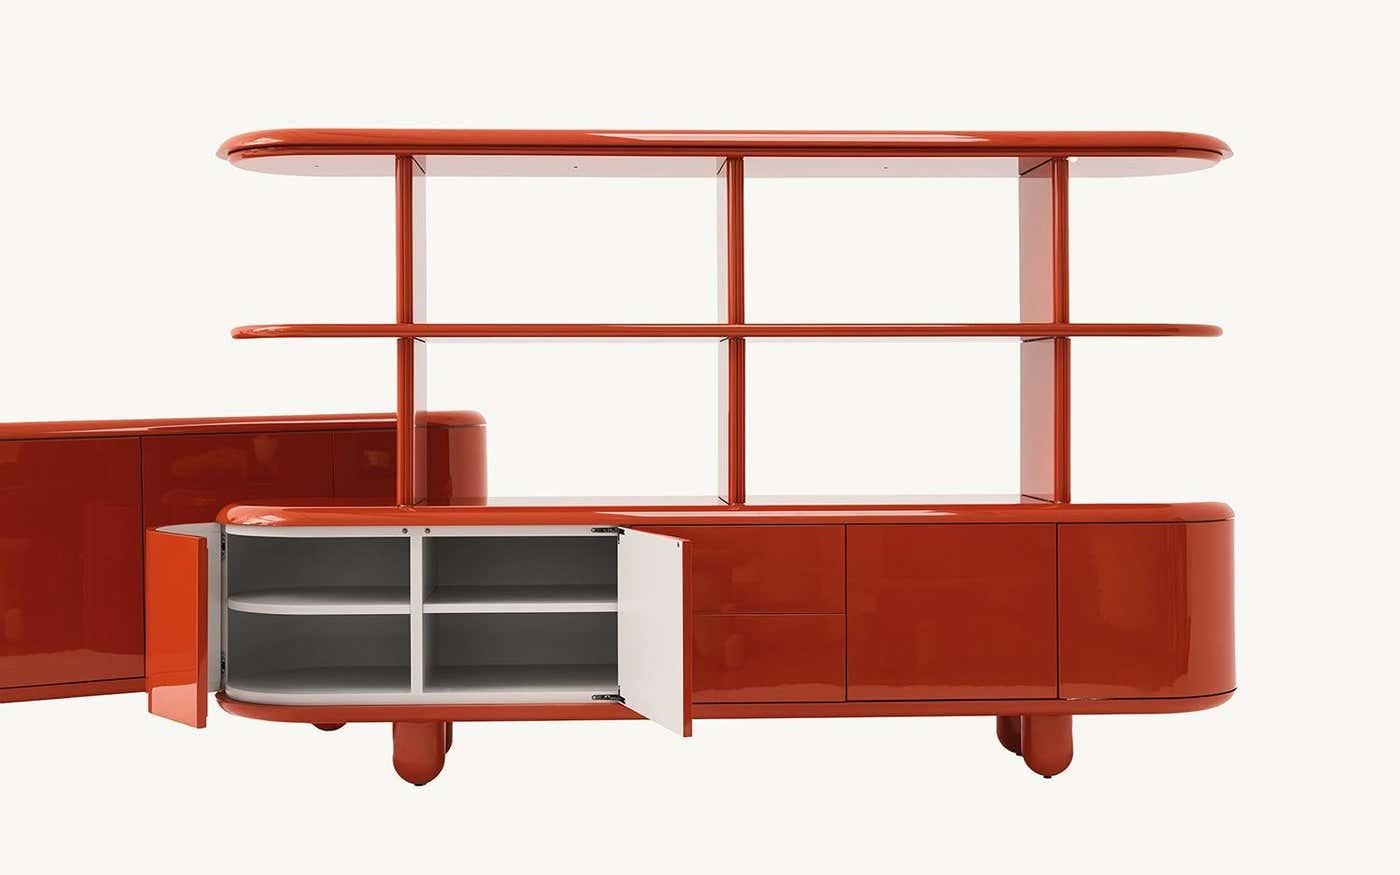 Modernes Sideboard aus rotem und weißem Holz mit 4 Türen + Schubladen von Jaime Hayon

Hergestellt in Spanien.

MATERIAL und Oberflächen: Außenausführung und matt lackierte Innenausführung. Die Beine sind aus massivem Erlenholz gefertigt und